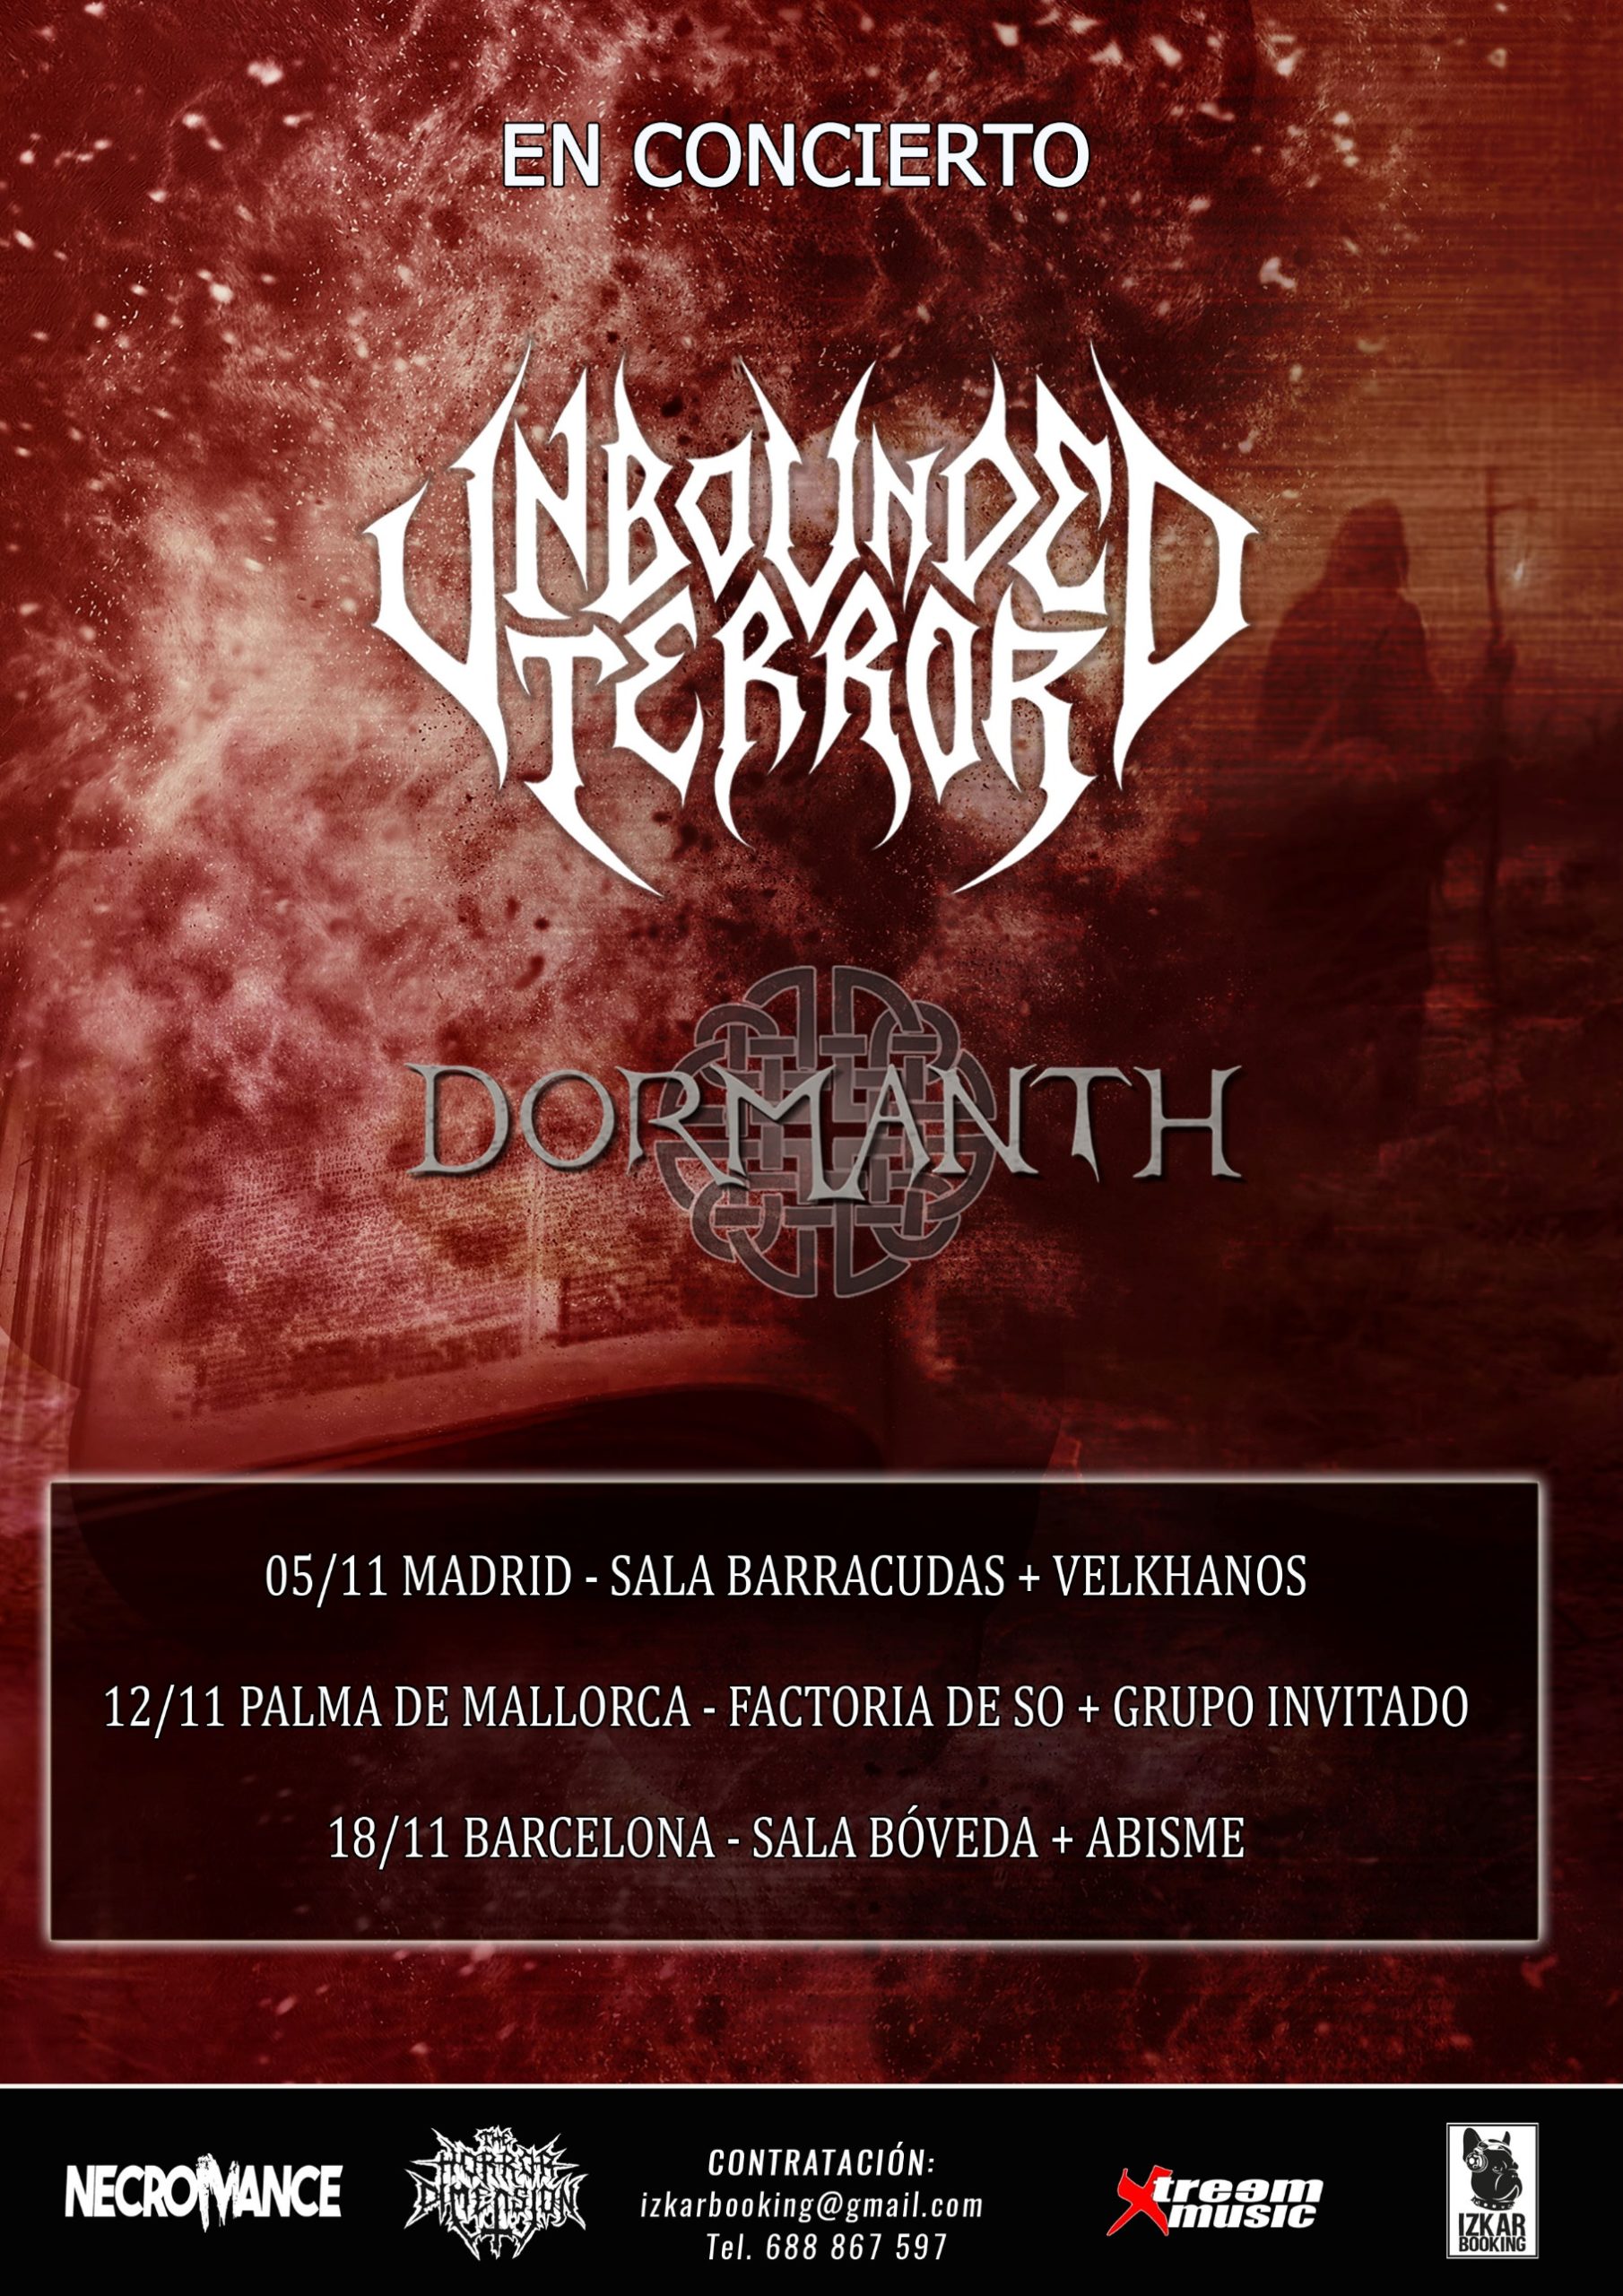 Unbounded Terror + Dormanth fechas directo en Noviembre